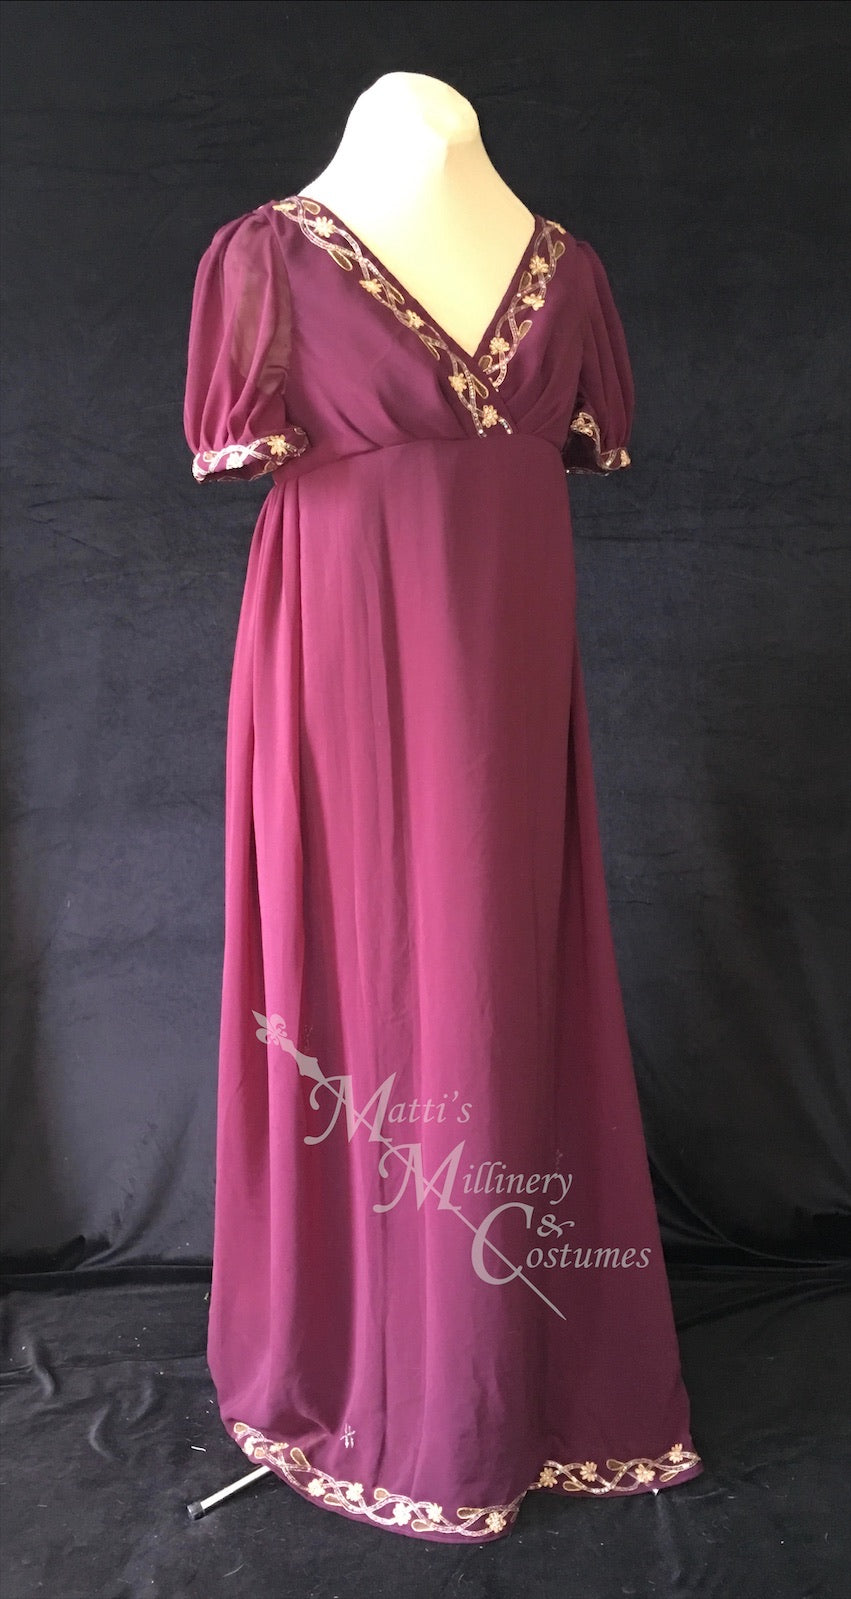 Wine Regency Jane Austen Ball Gown Evening Dress in sari silk